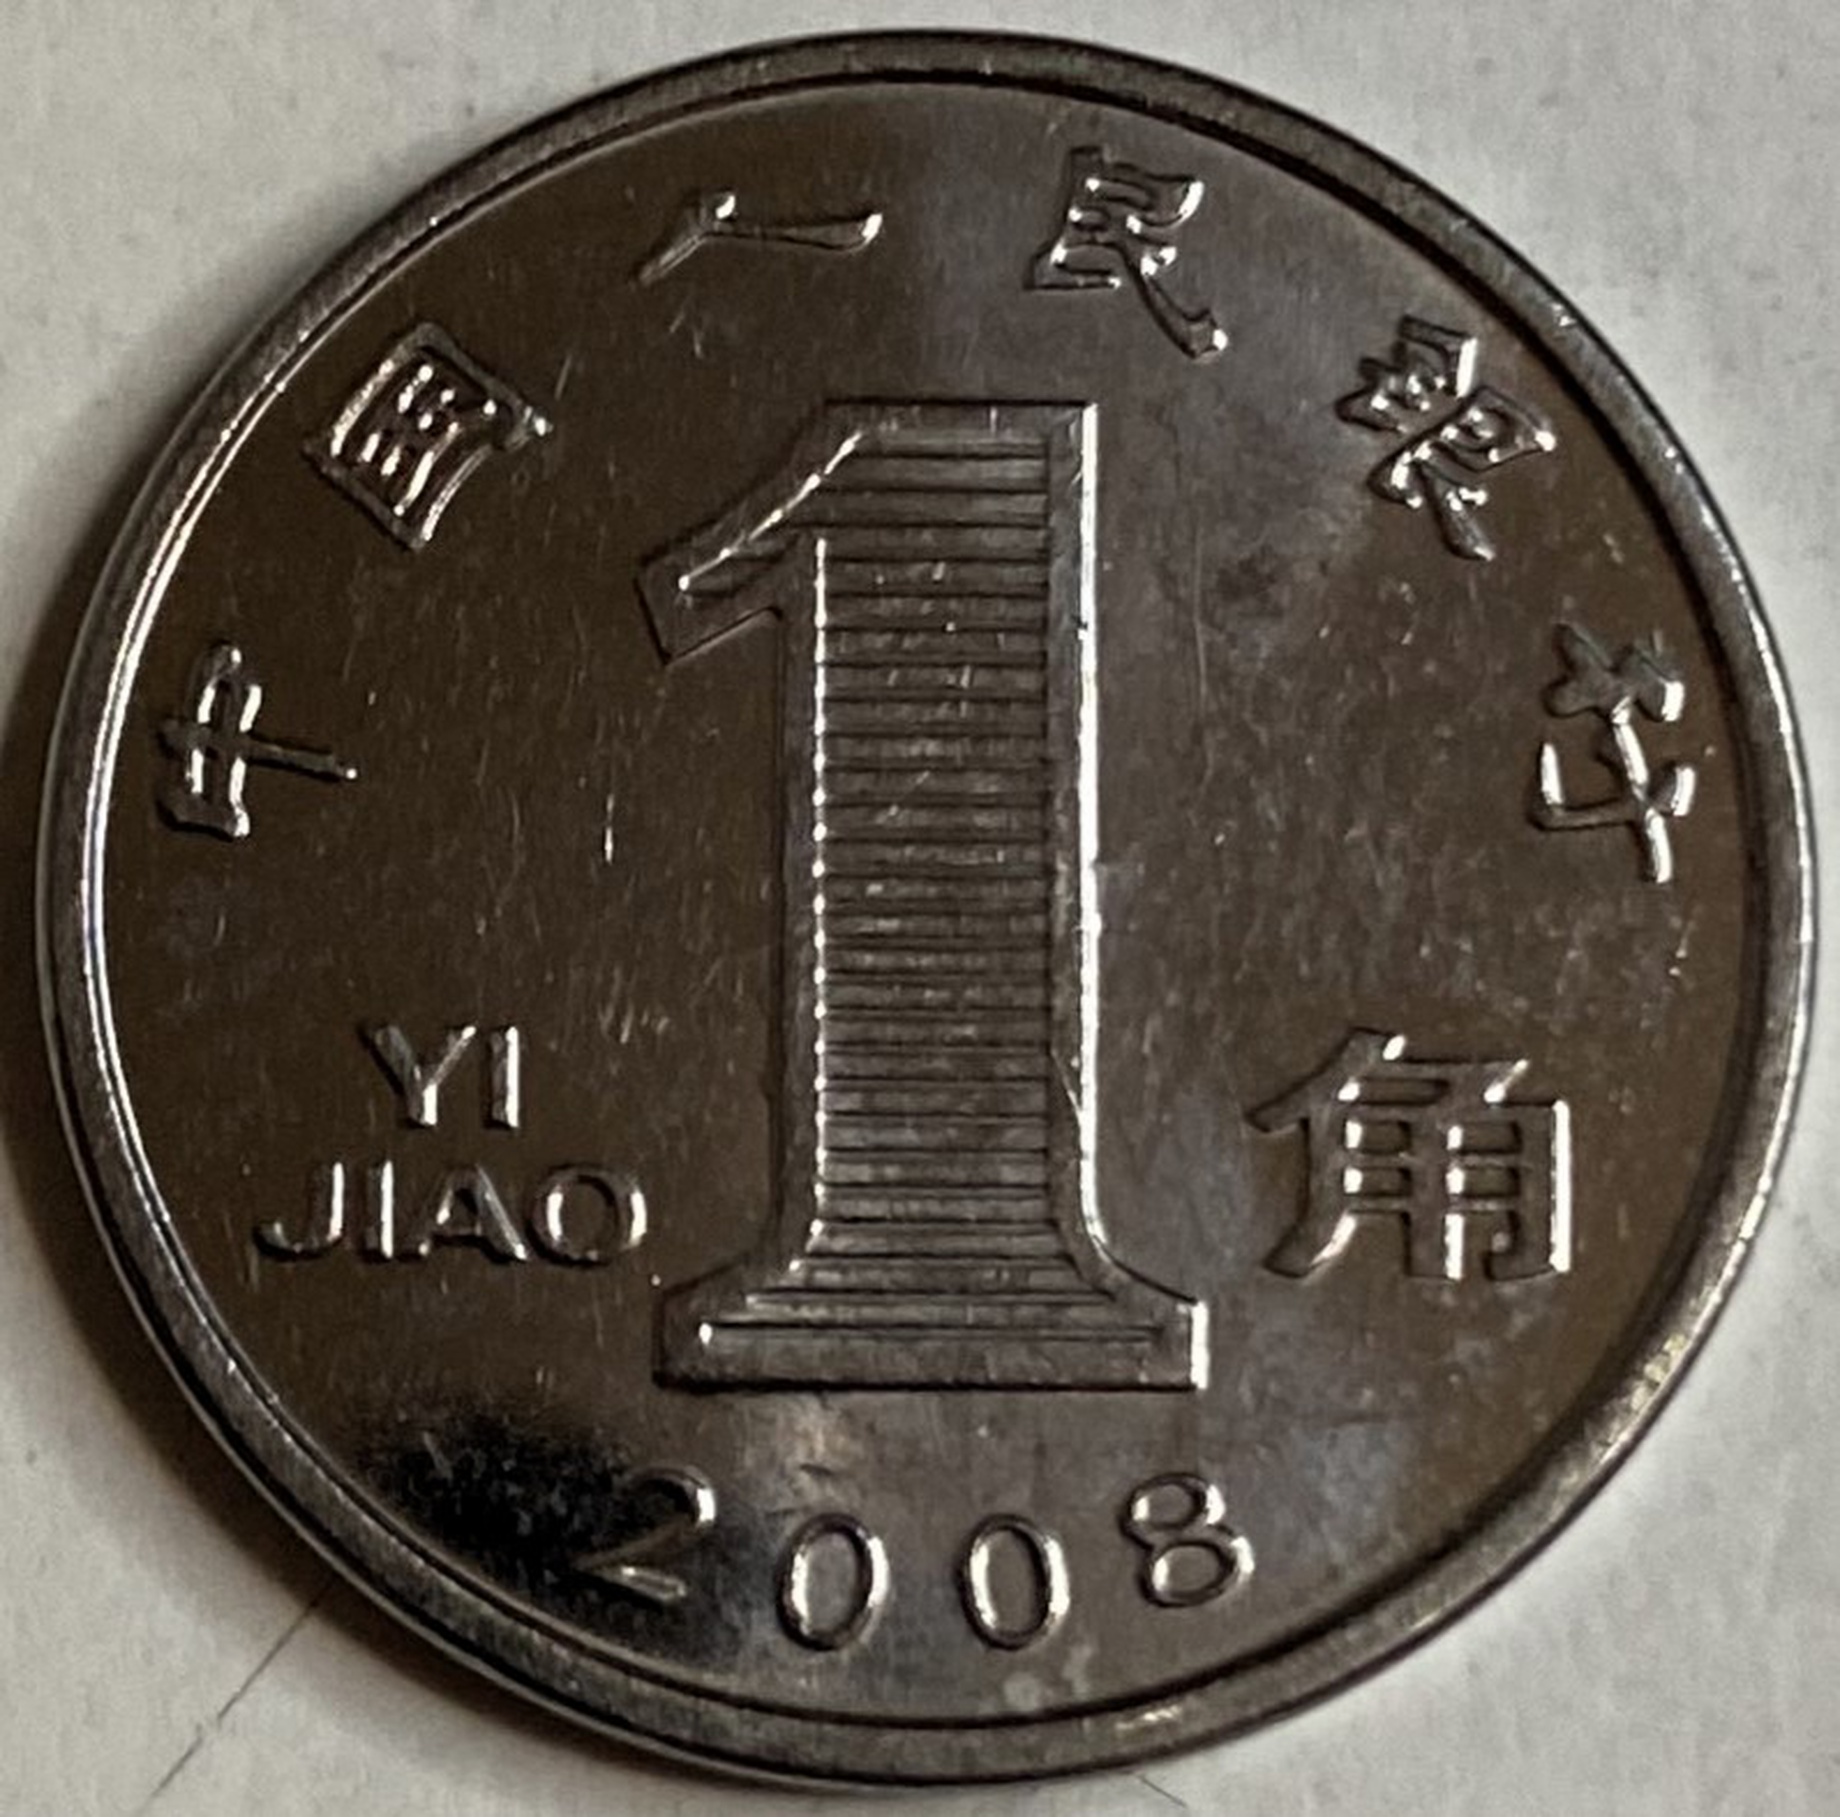 Иностранная монета 1 юань Китай 2008 год